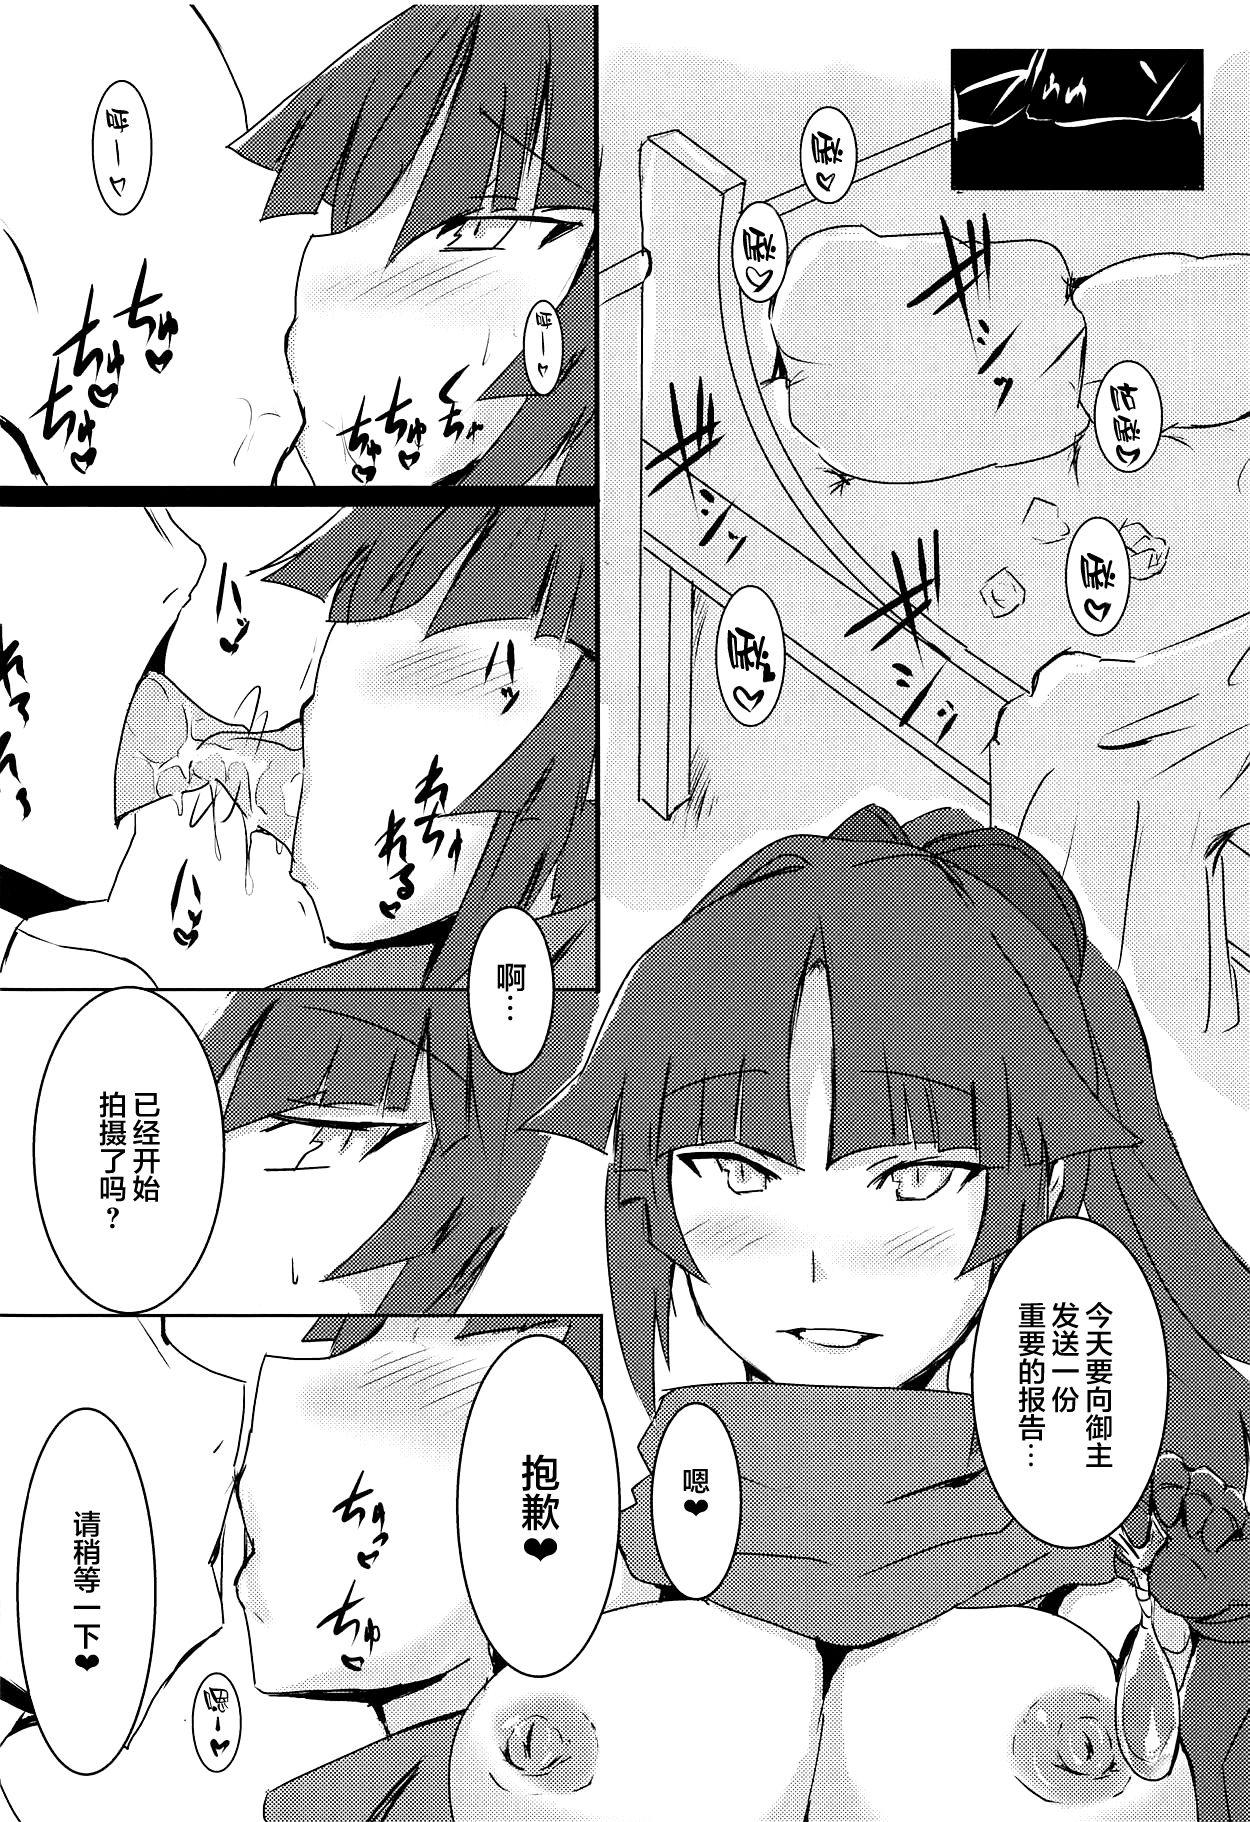 Rubia Kizuna 10. ☆4 Saba Itadakimasu - Fate grand order Gostosas - Page 4